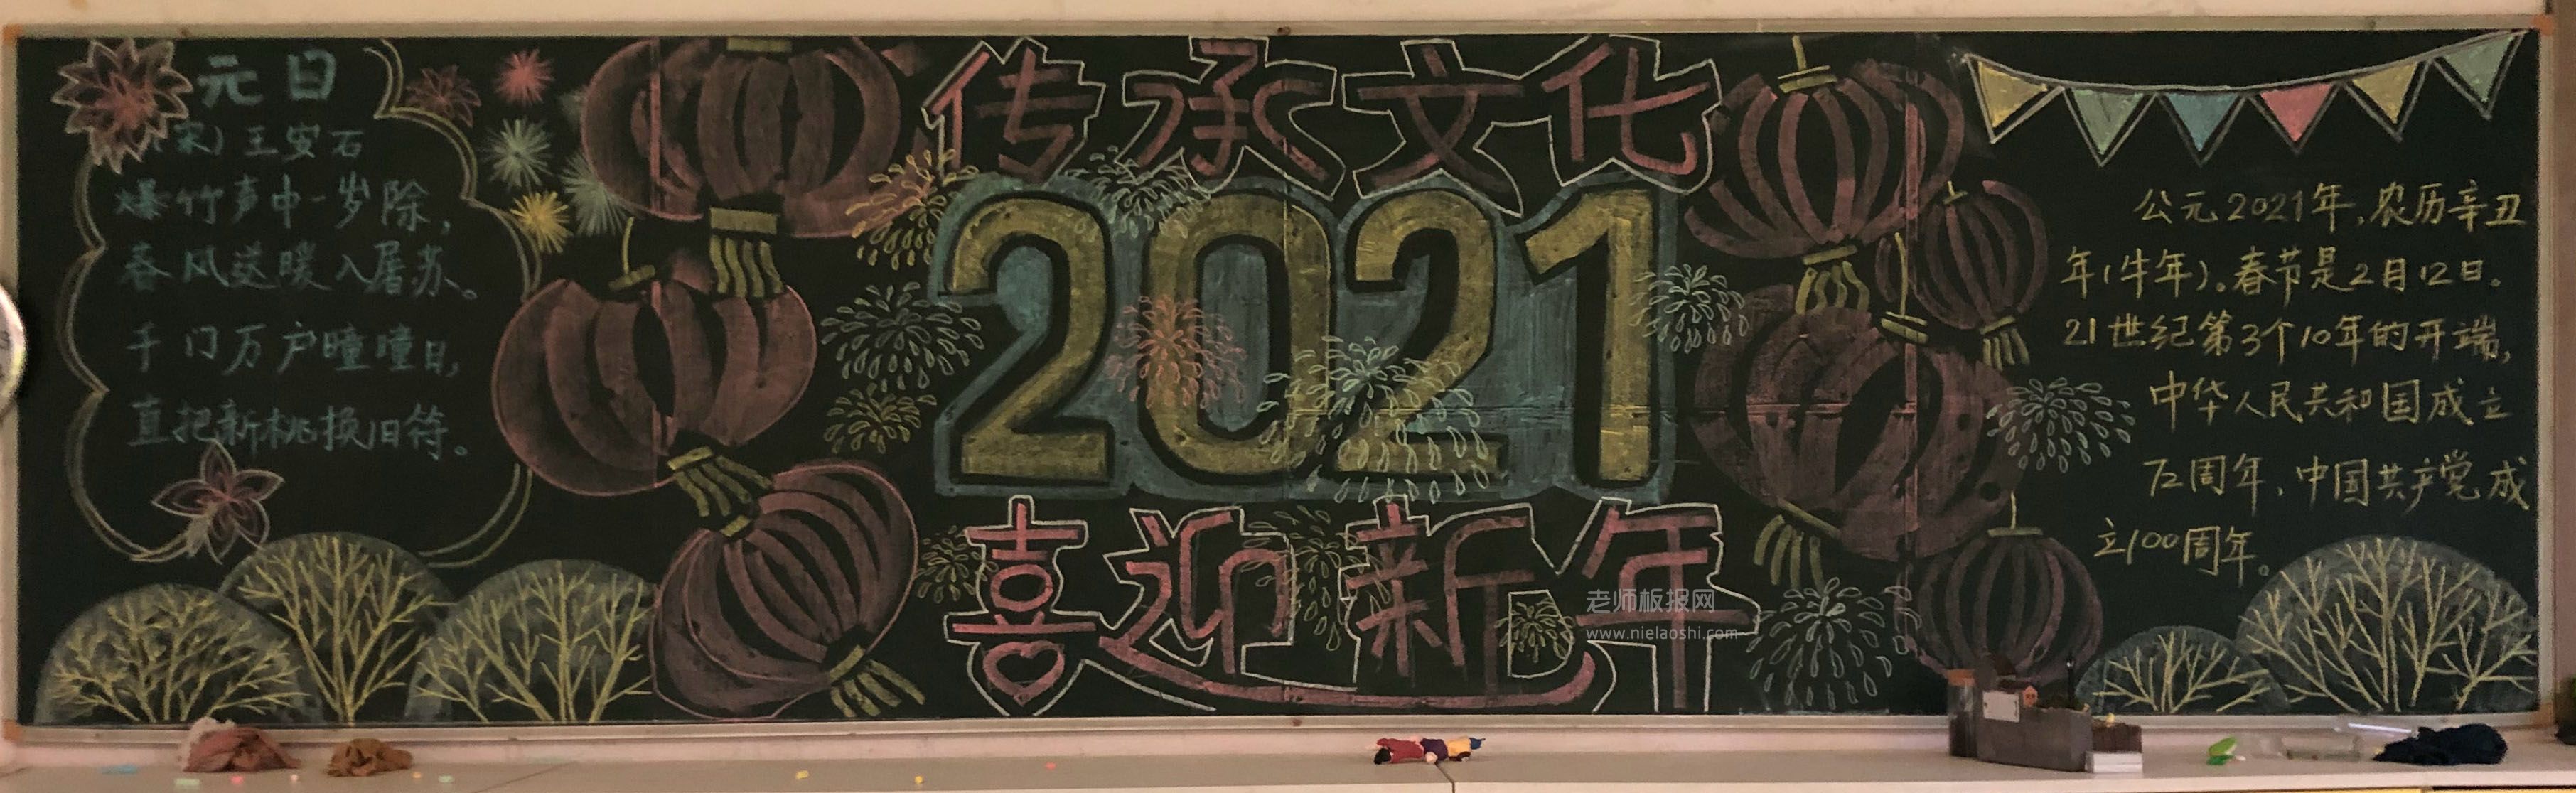 2021喜迎新年 传承文化黑板报图片